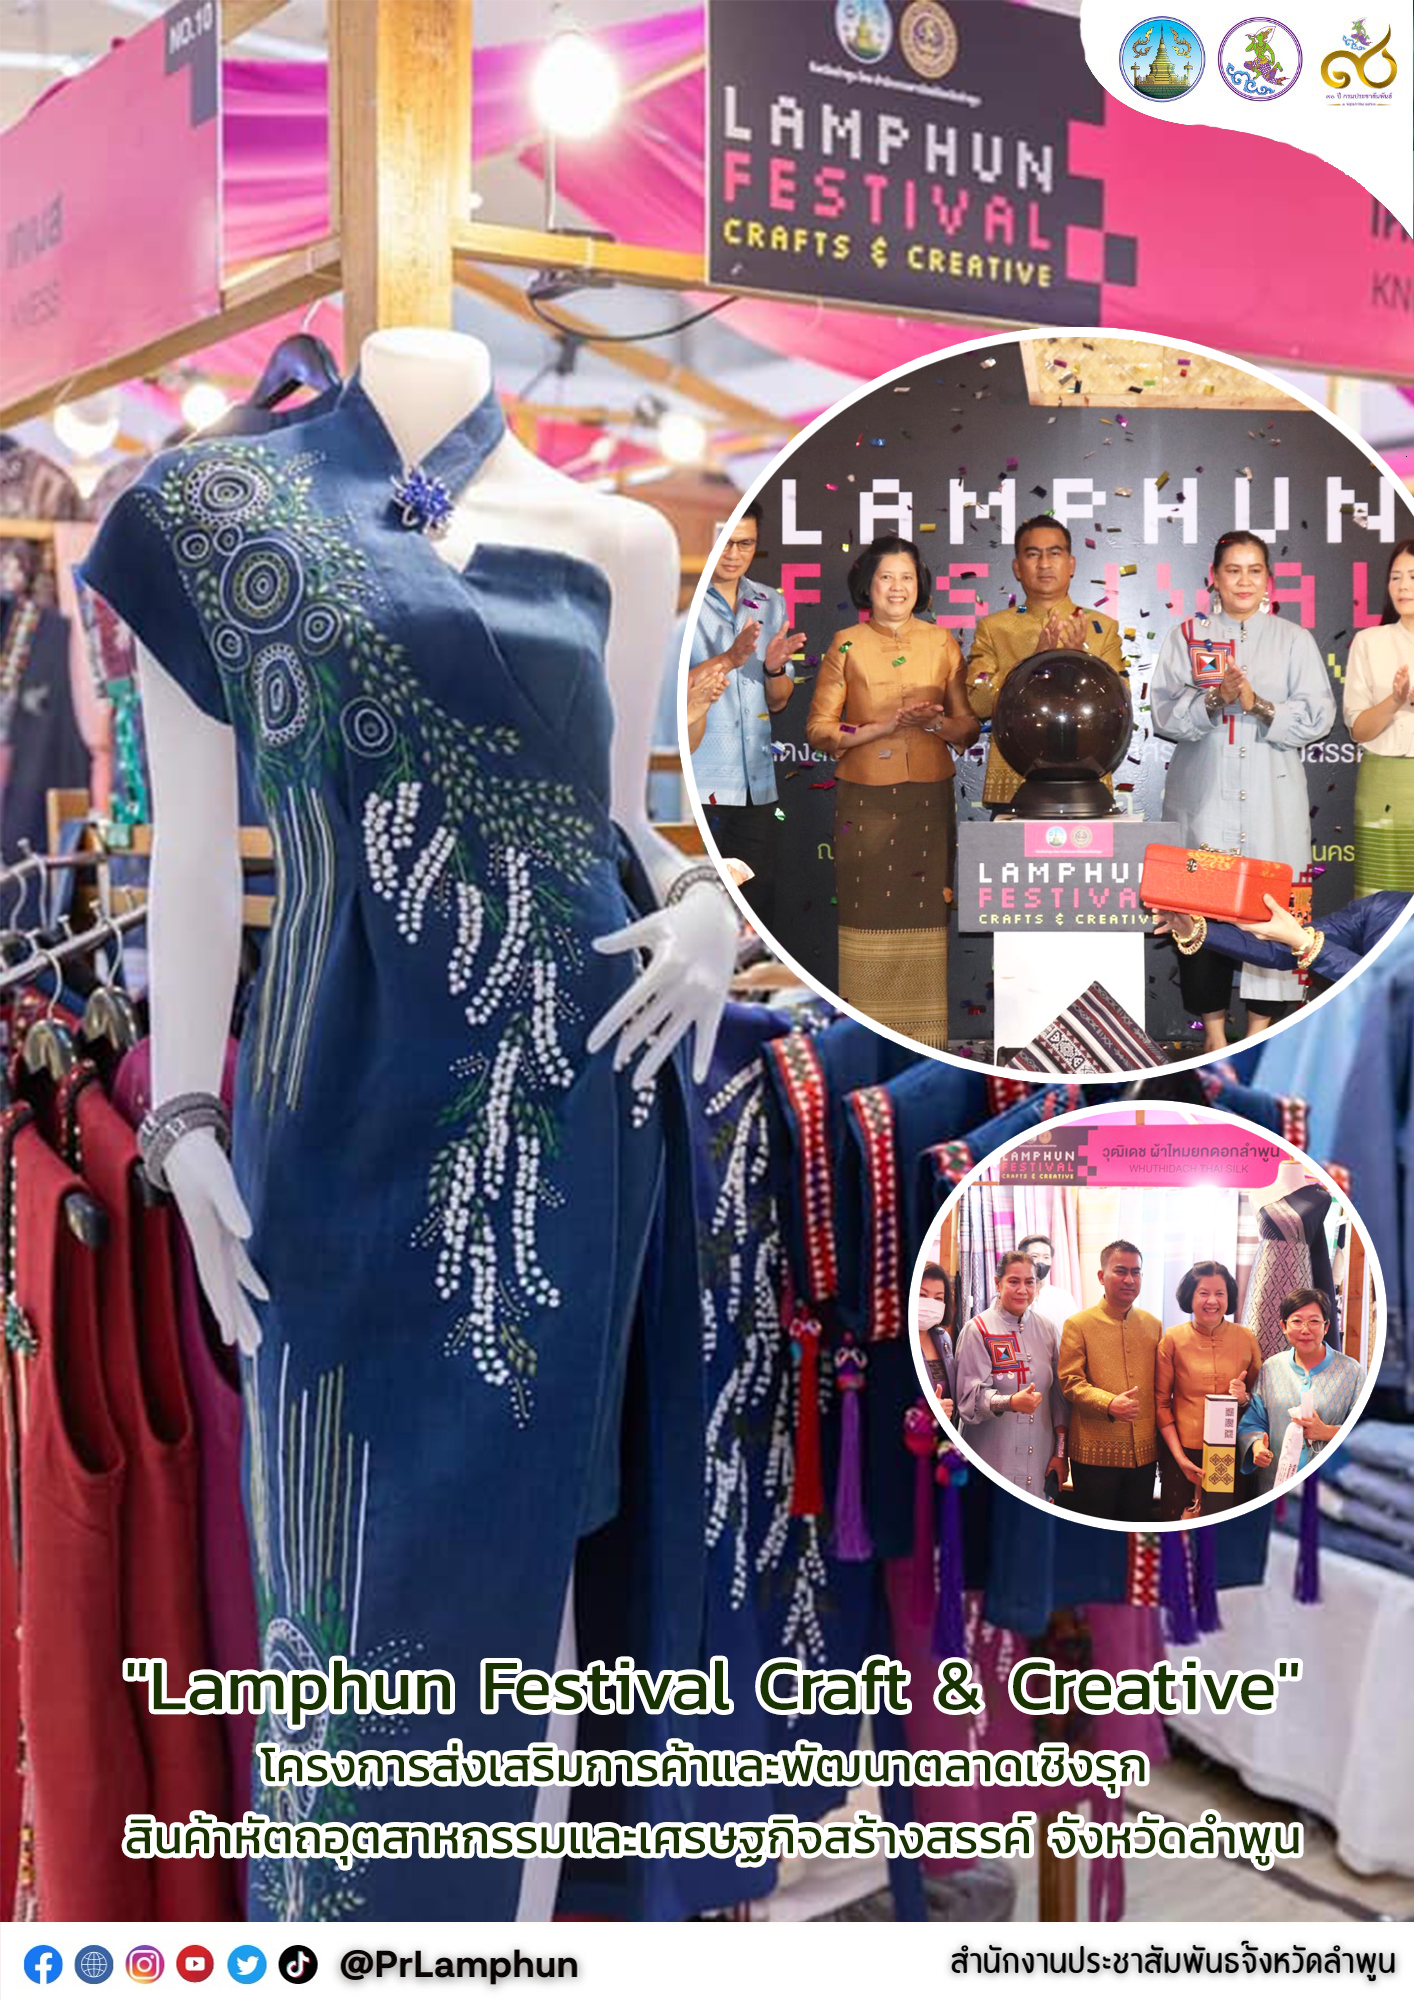 ✨👗 จังหวัดลำพูน  มุ่งส่งเสริมการค้าและพัฒนาตลาดเชิงรุก สินค้าหัตถอุตสาหกรรมและเศรษฐกิจสร้างสรรค์ของจังหวัด ภายในงาน "Lamphun Festival Craft & Creative" ✨👗